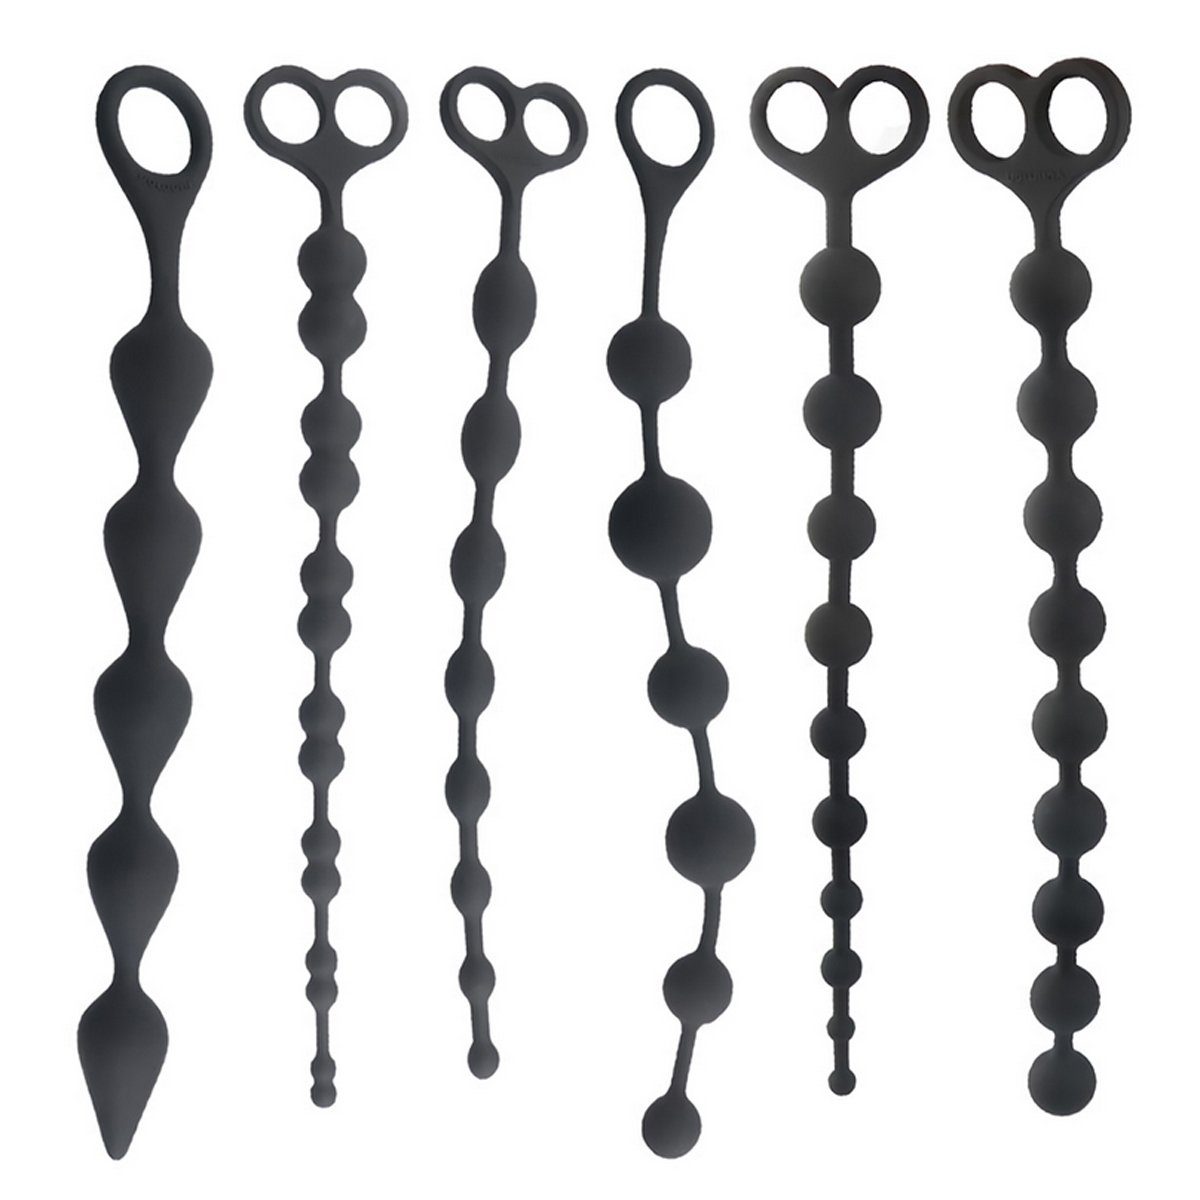 TPFSecret Analkette für Männer und Frauen, ergonomische große 31,5cm Anal Perlen Kette, mit 6 Kugeln und unterschiedlichem Durchmesser - Farbe: Schwarz